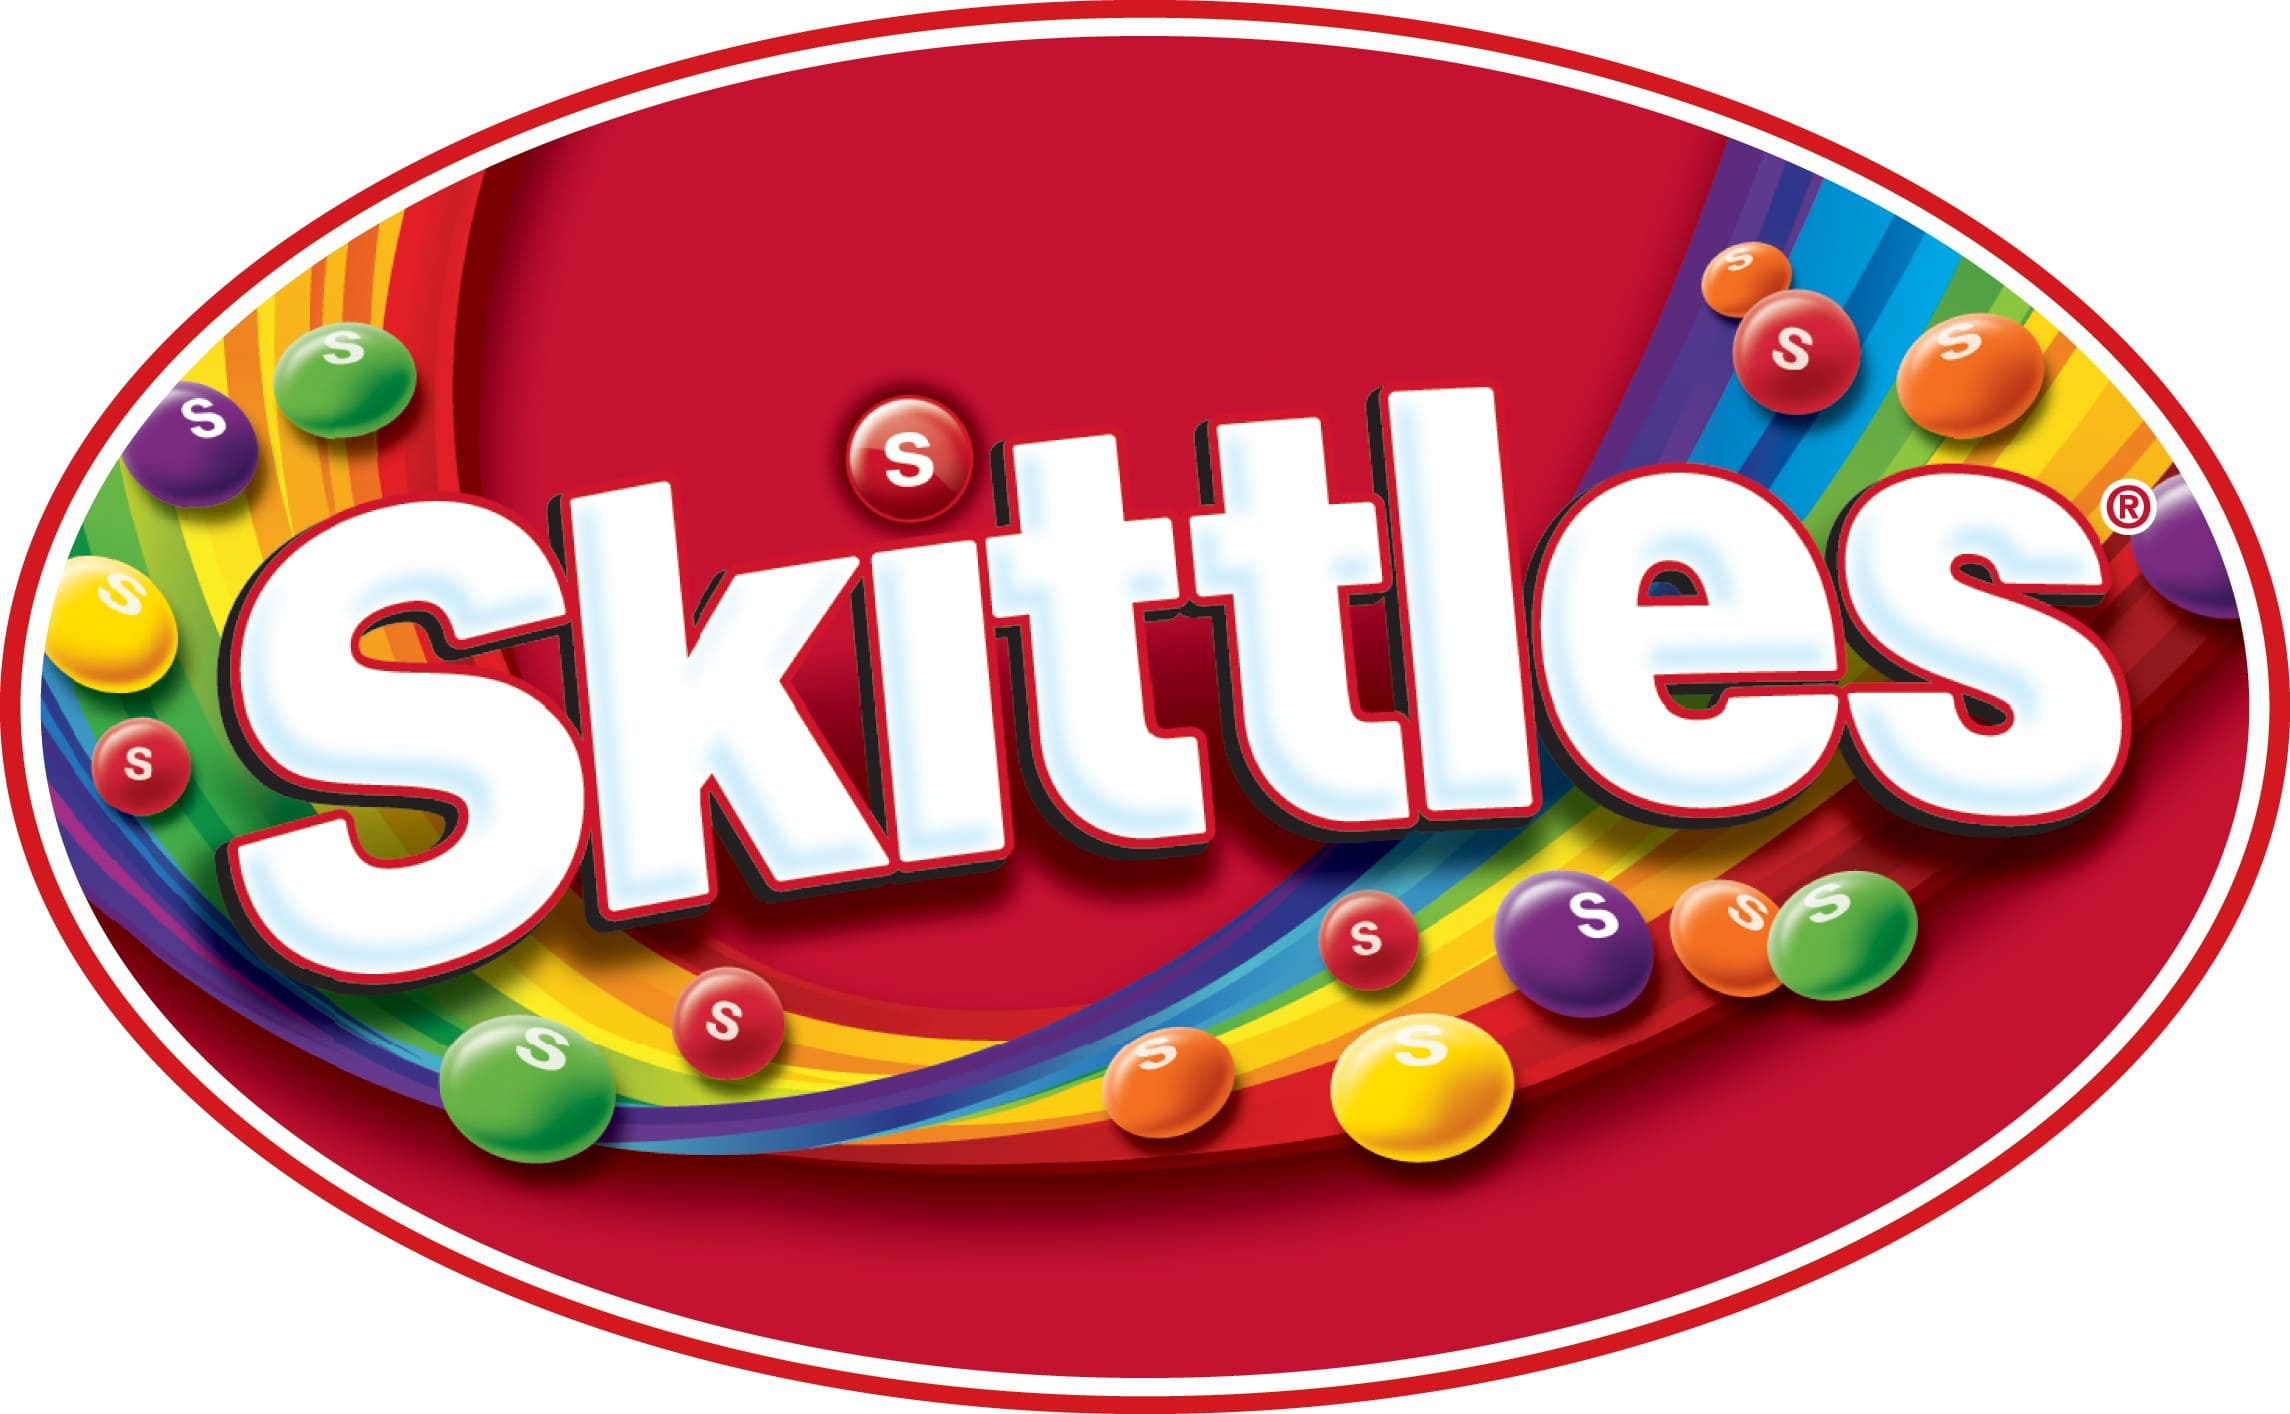 Skittles Logo Transparent - KibrisPDR